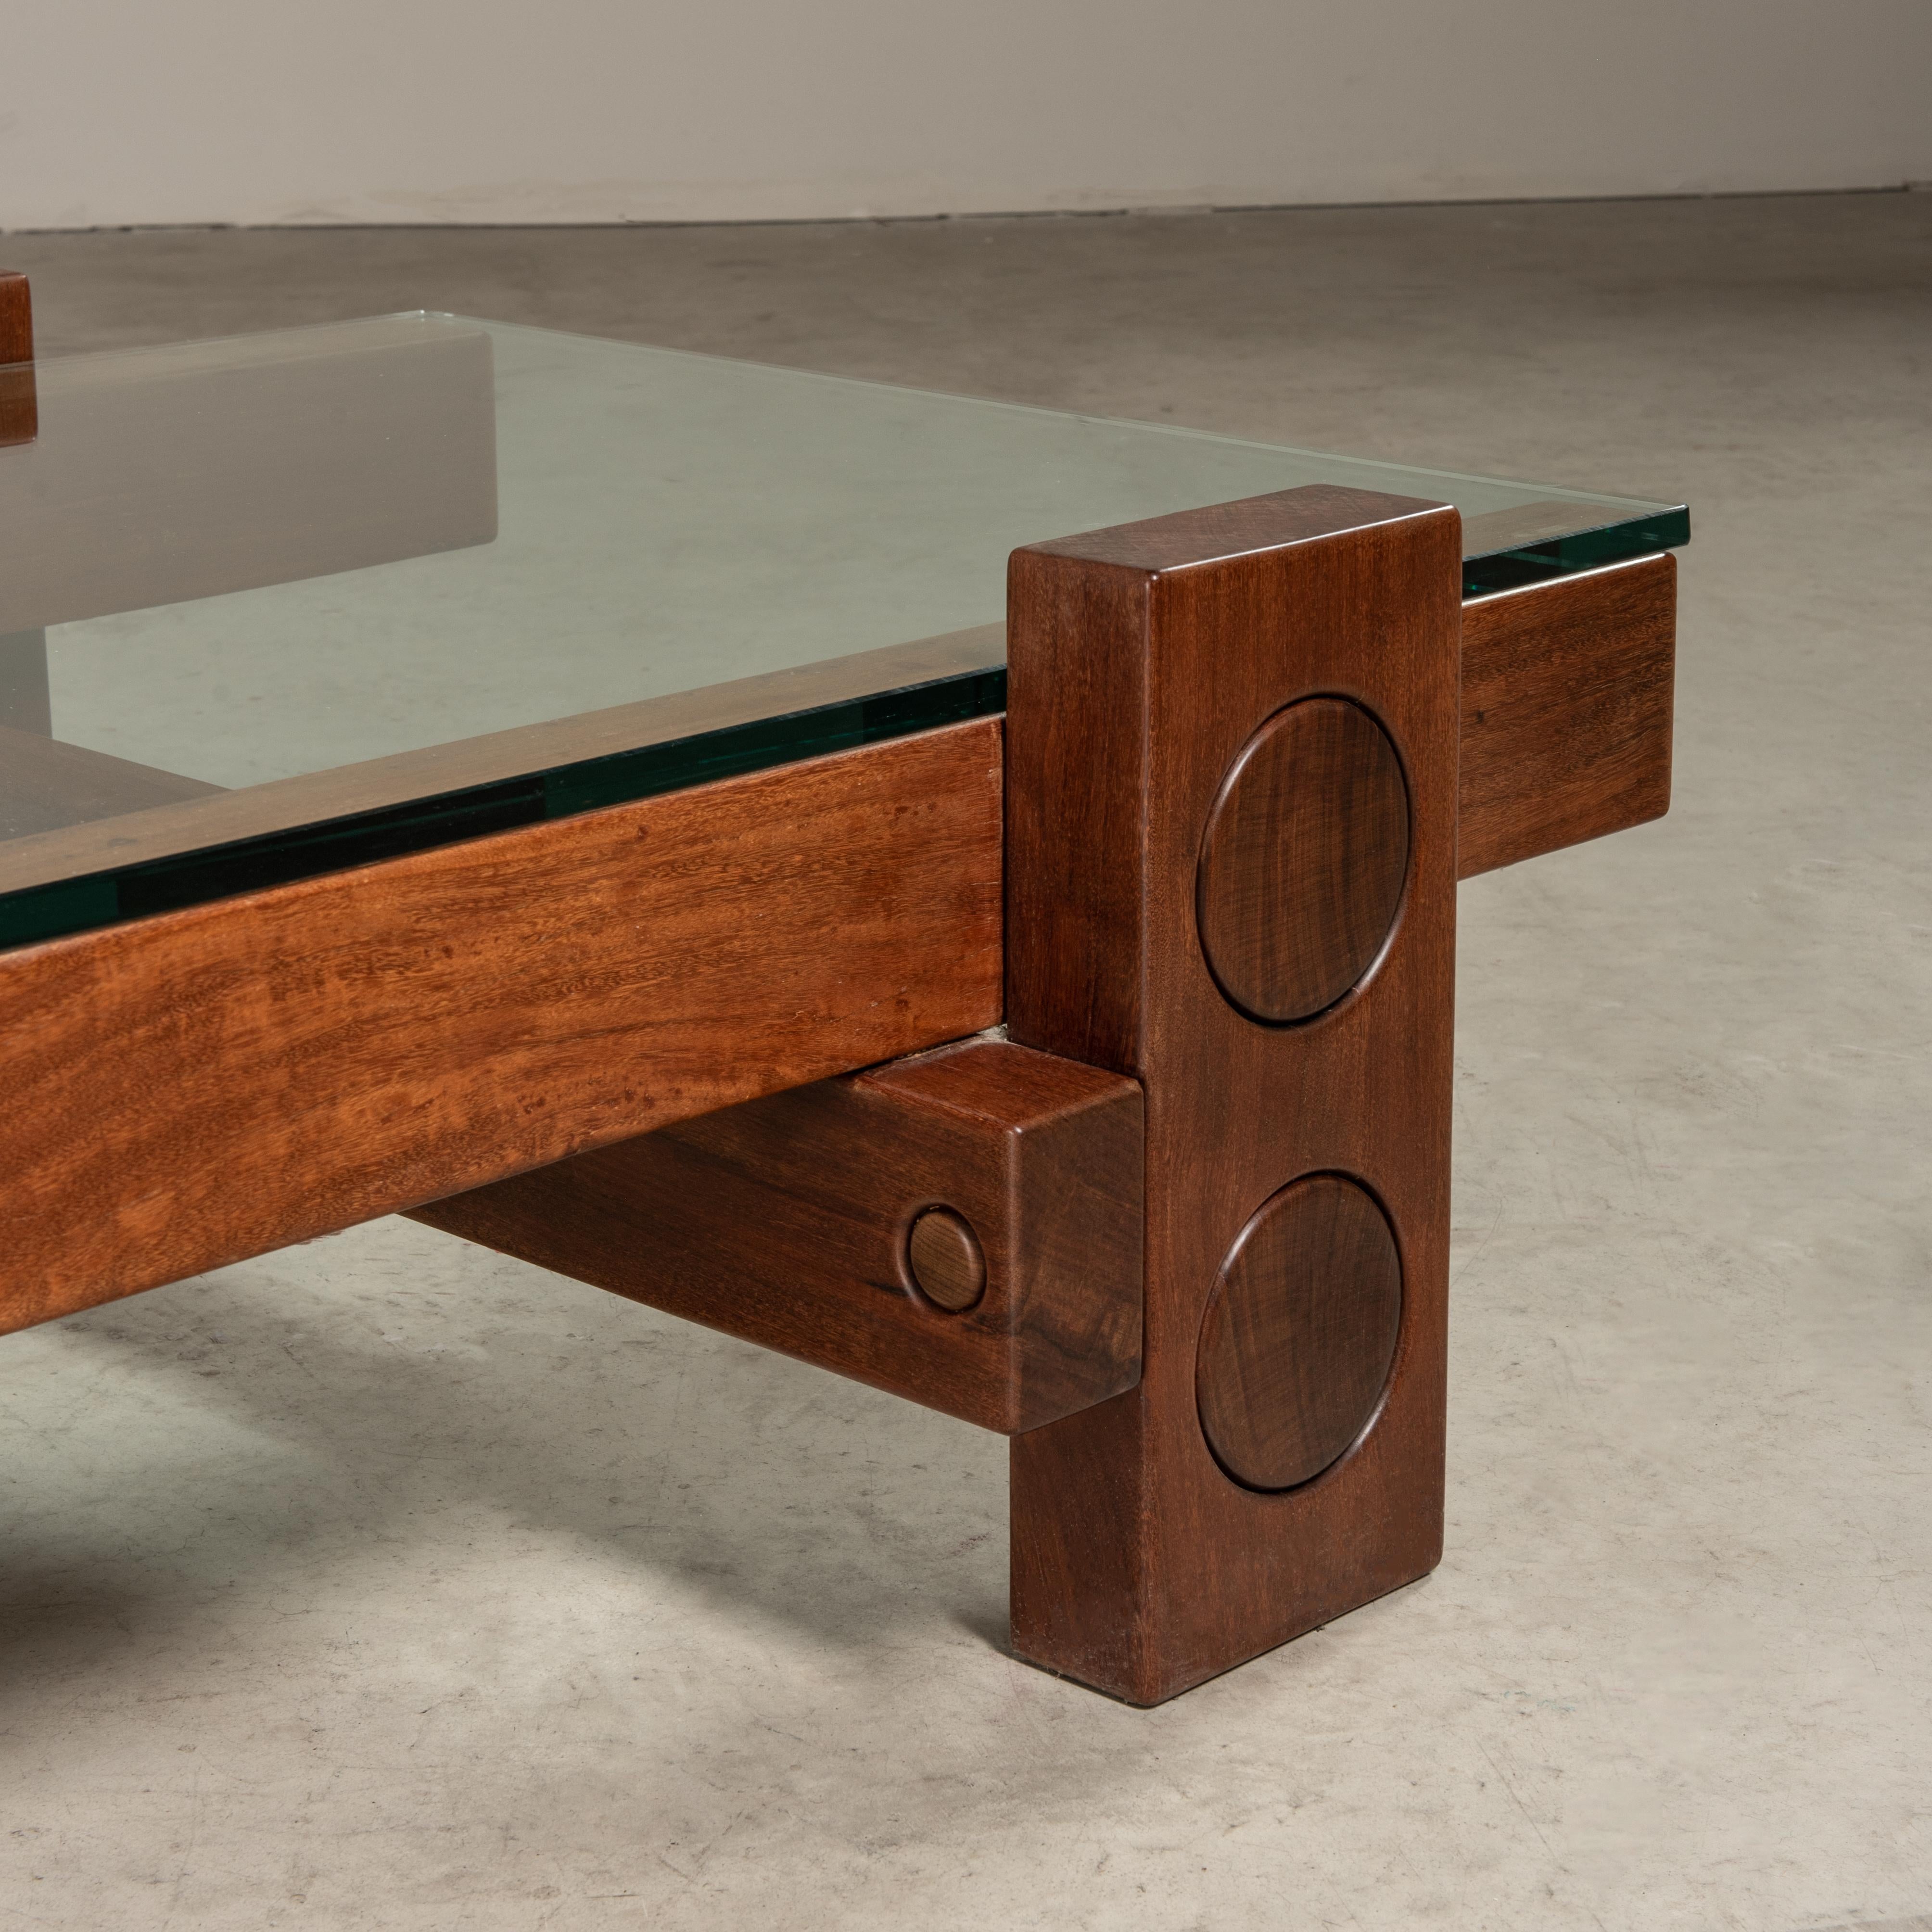 'PC' Center Table in Solid Wood, Zanini de Zanine, Brazilian Contemporary Design For Sale 1